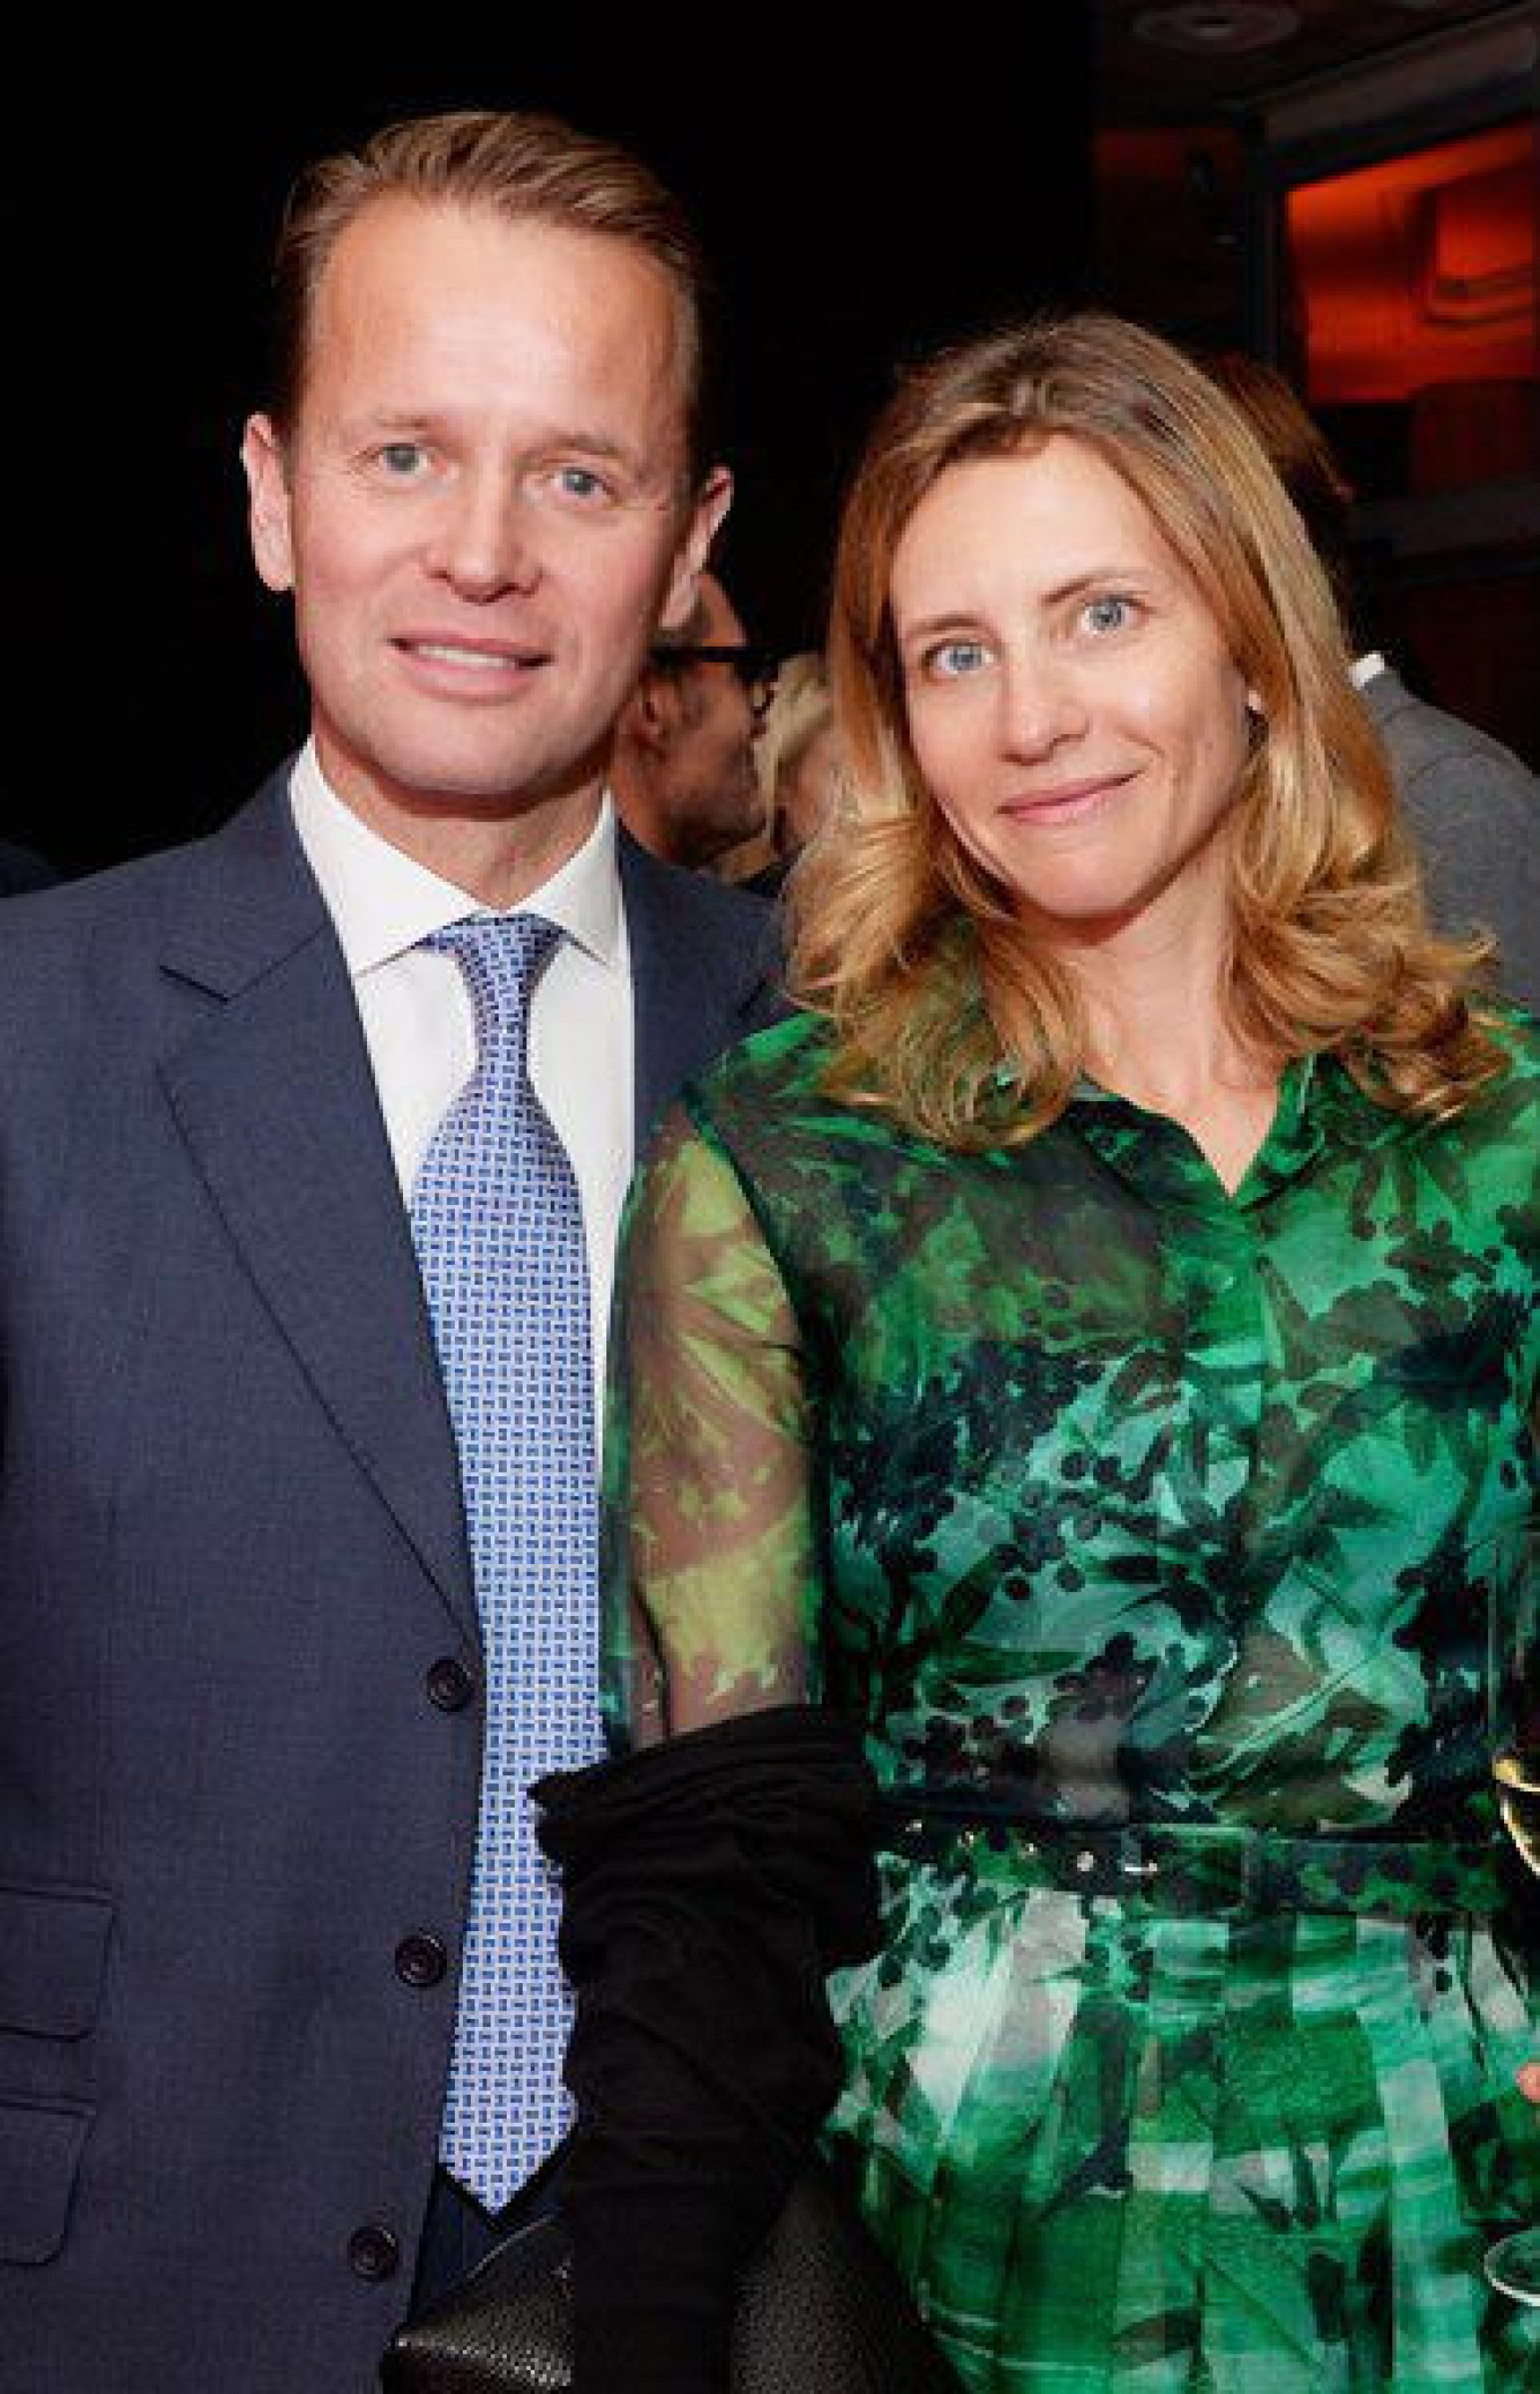 Simon Robinson and Natasha Kuznetsova smiling